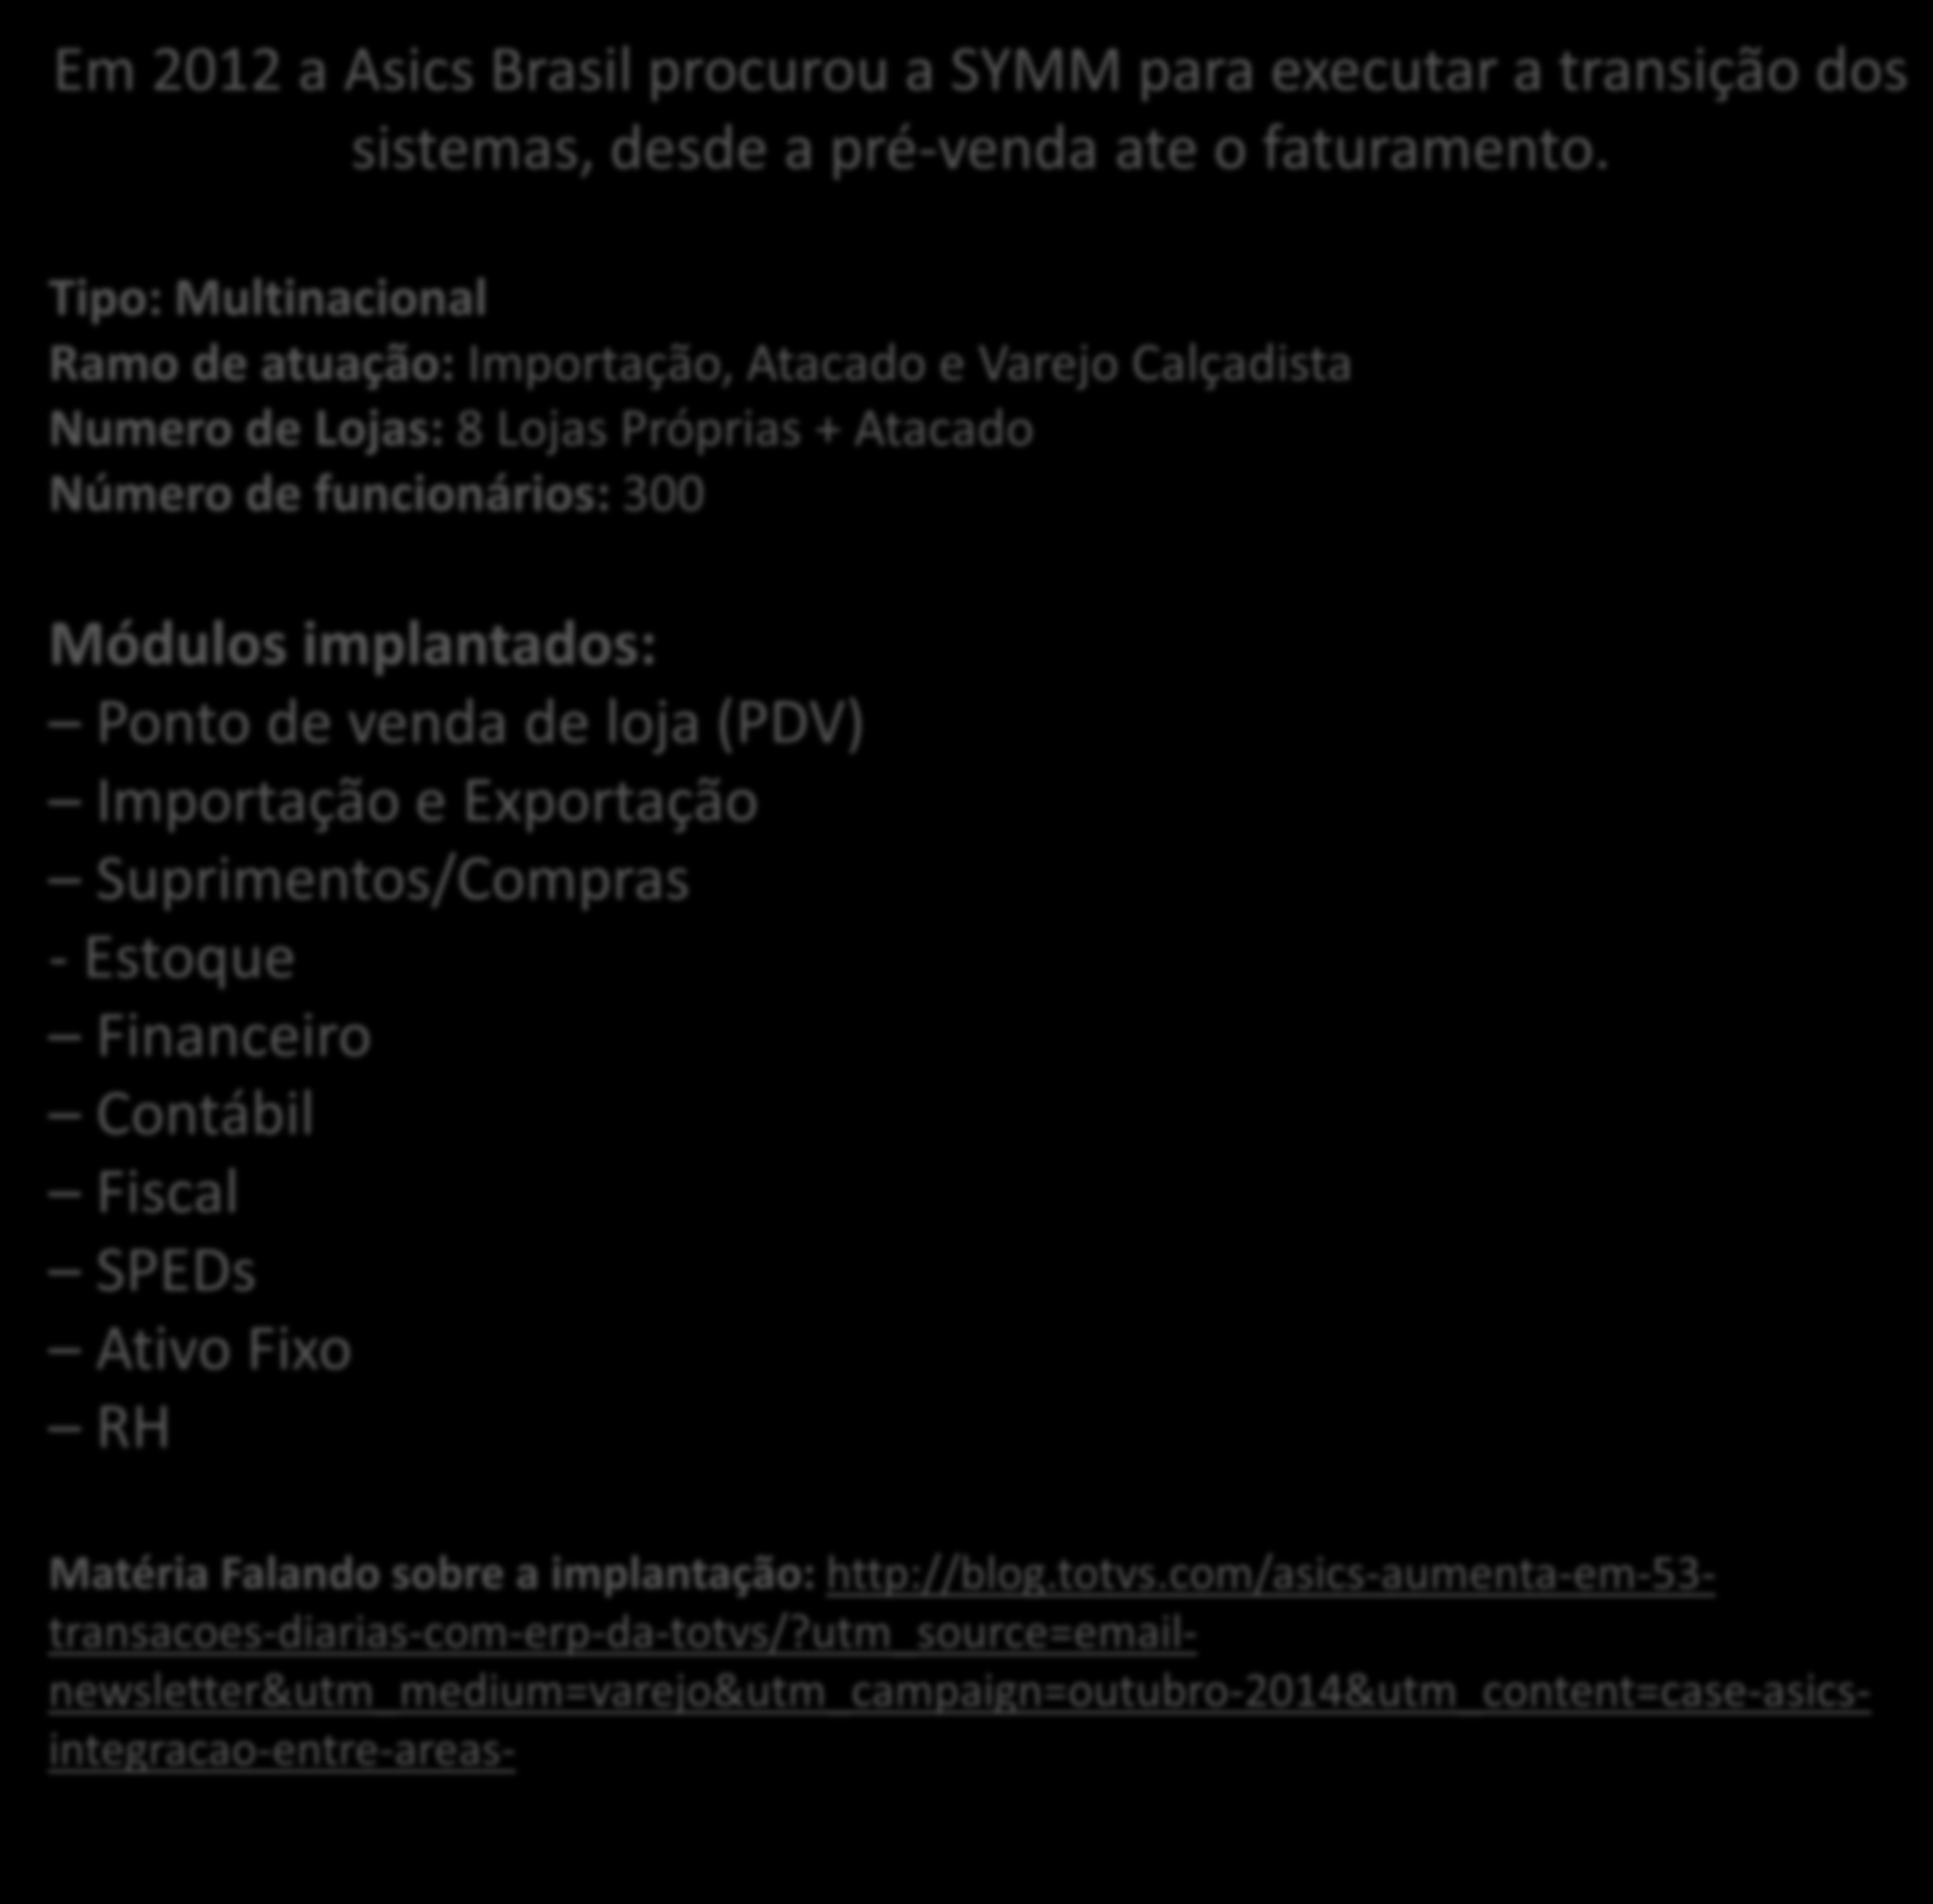 Em 2012 a Asics Brasil procurou a SYMM para executar a transição dos sistemas, desde a pré-venda ate o faturamento.